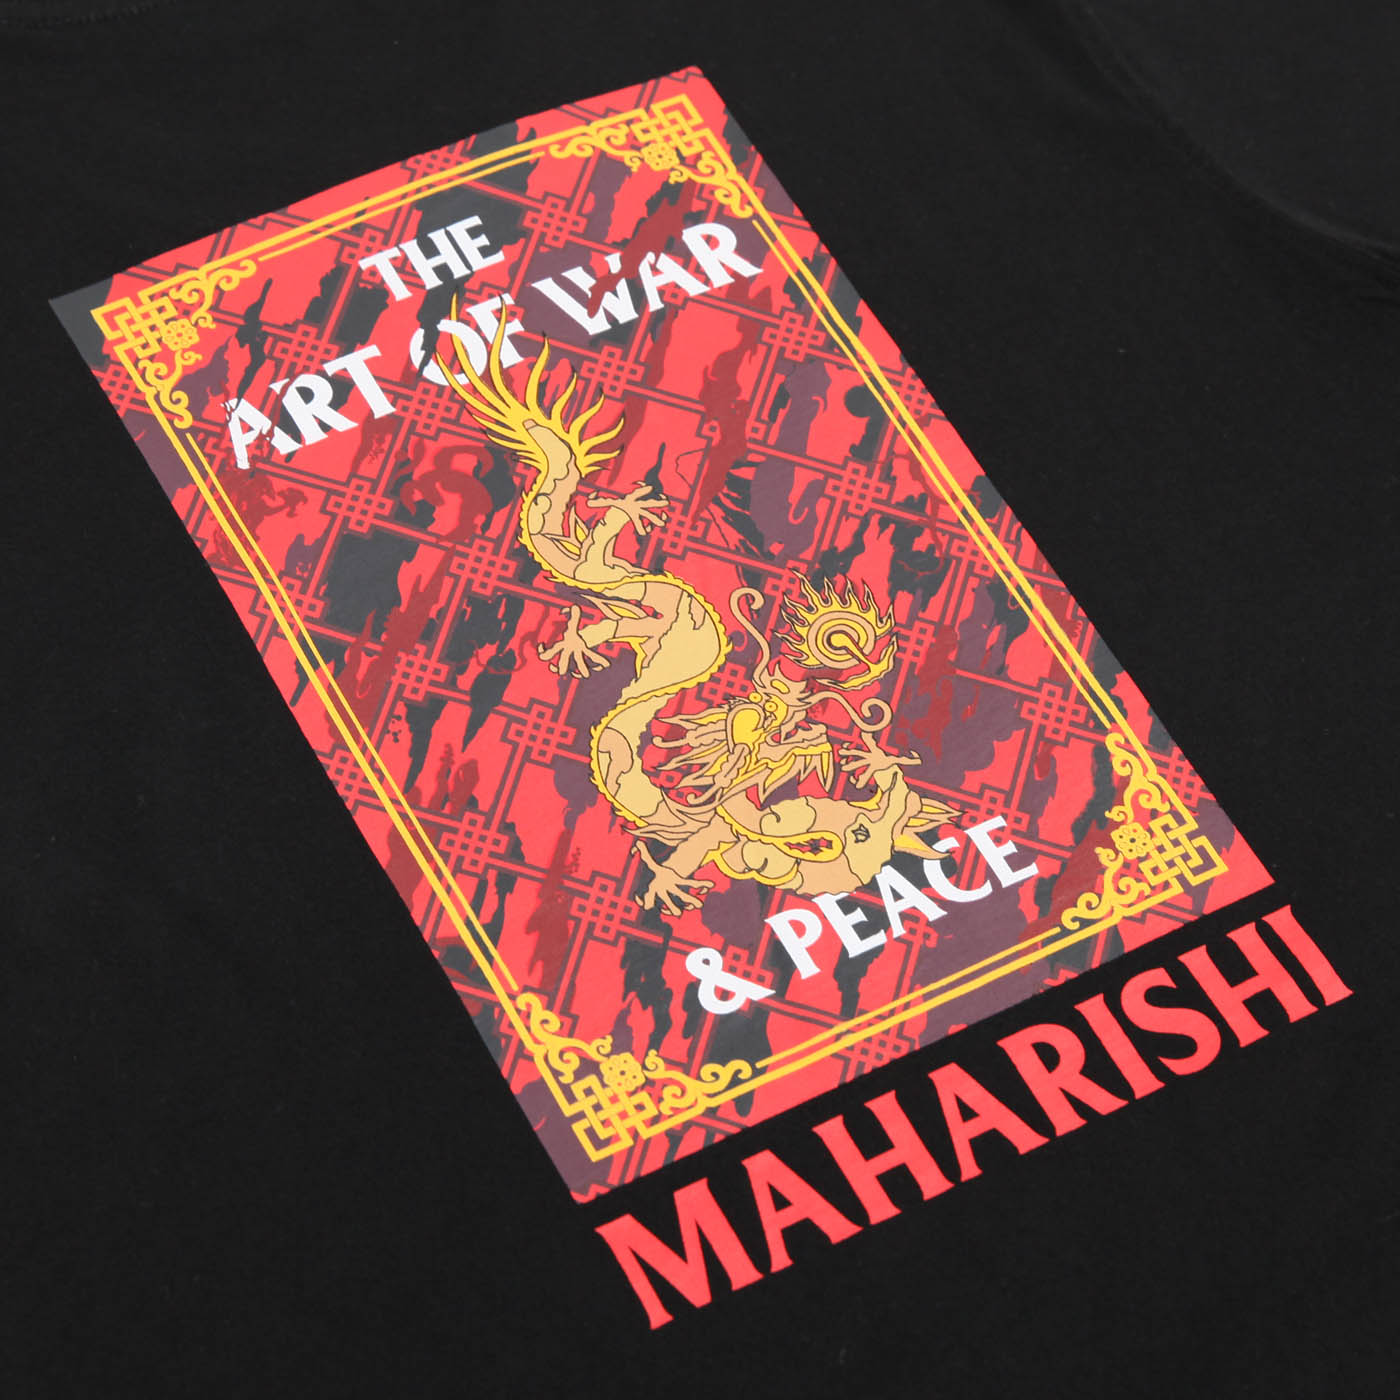 Maharishi Art Of War and Peace T Shirt Black